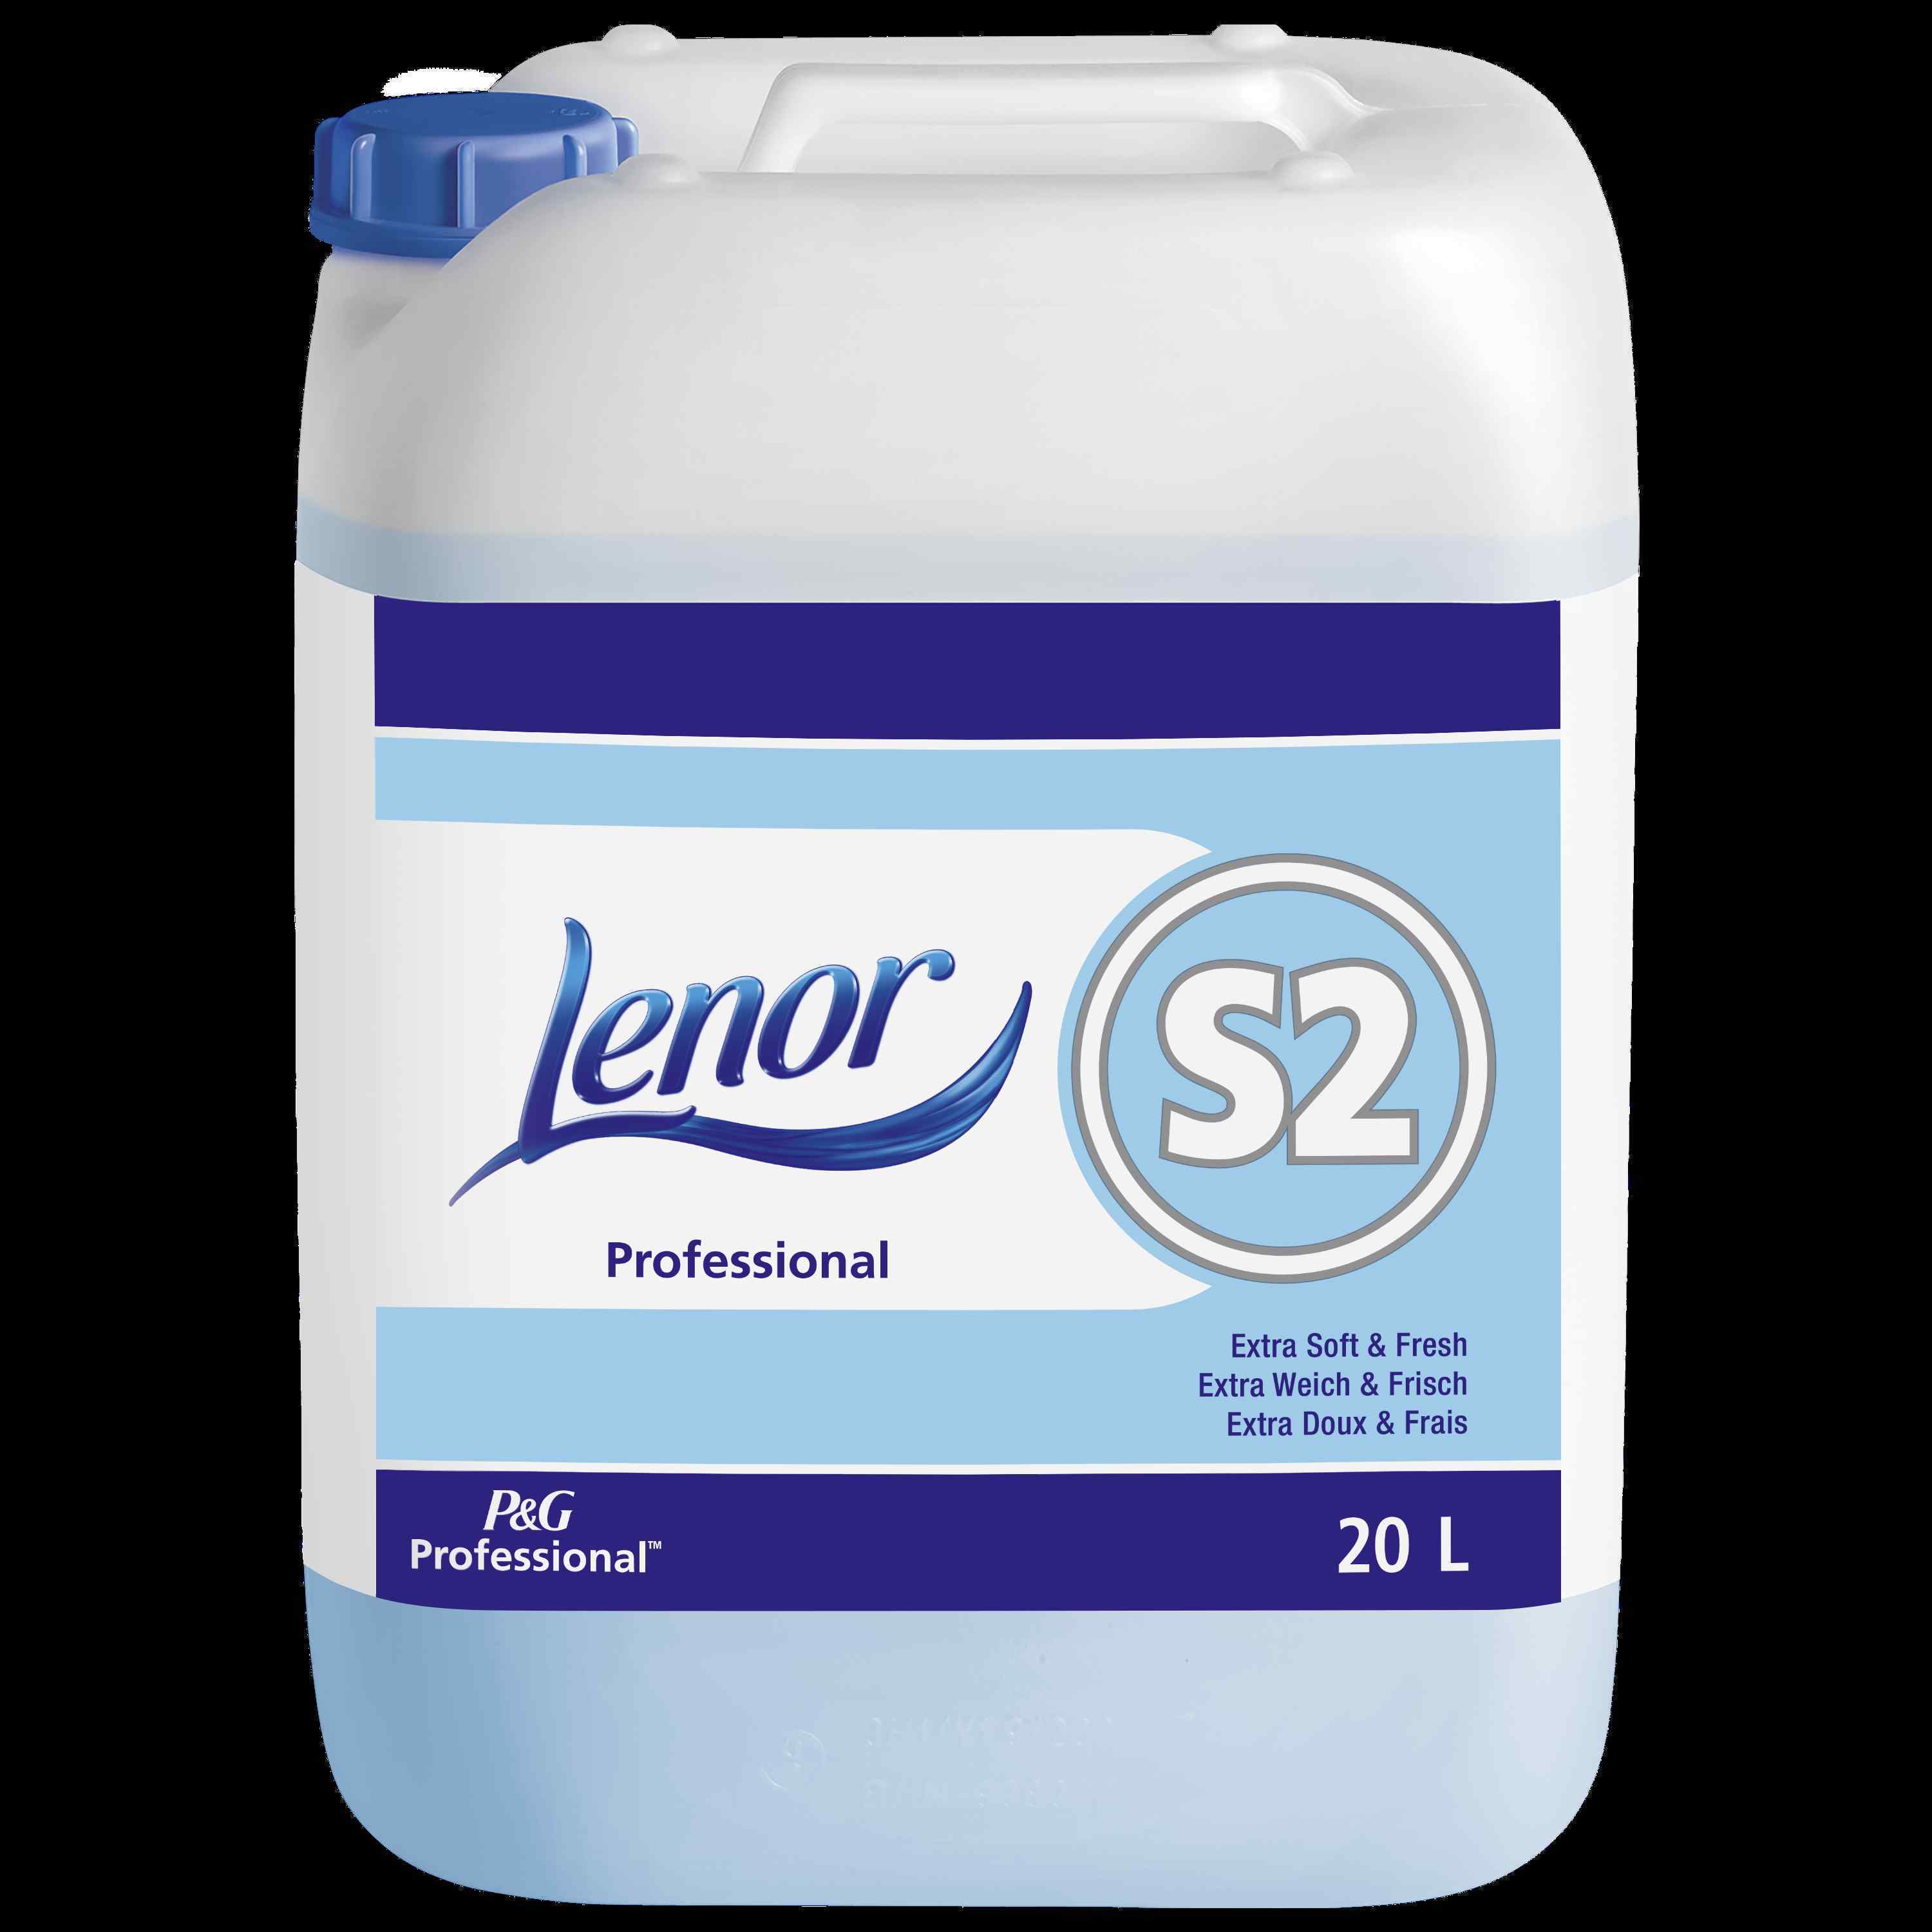 P&G-Lenor Professional S2 Fabric Softener (20ltr)